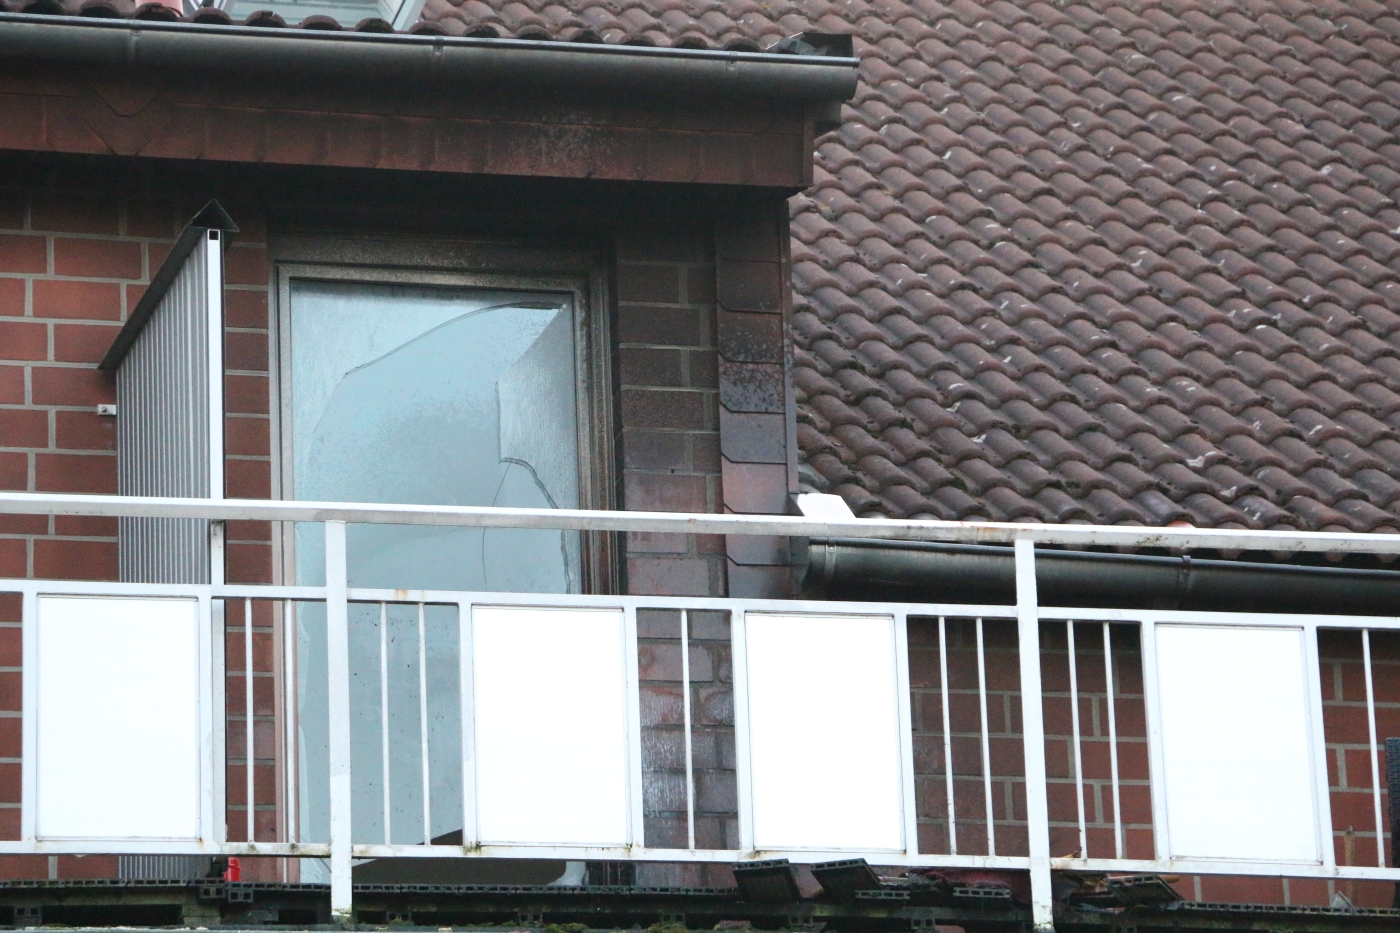 Rauchschaden in Wohnung: Zigarette löst Feuer auf Balkon in Melle aus